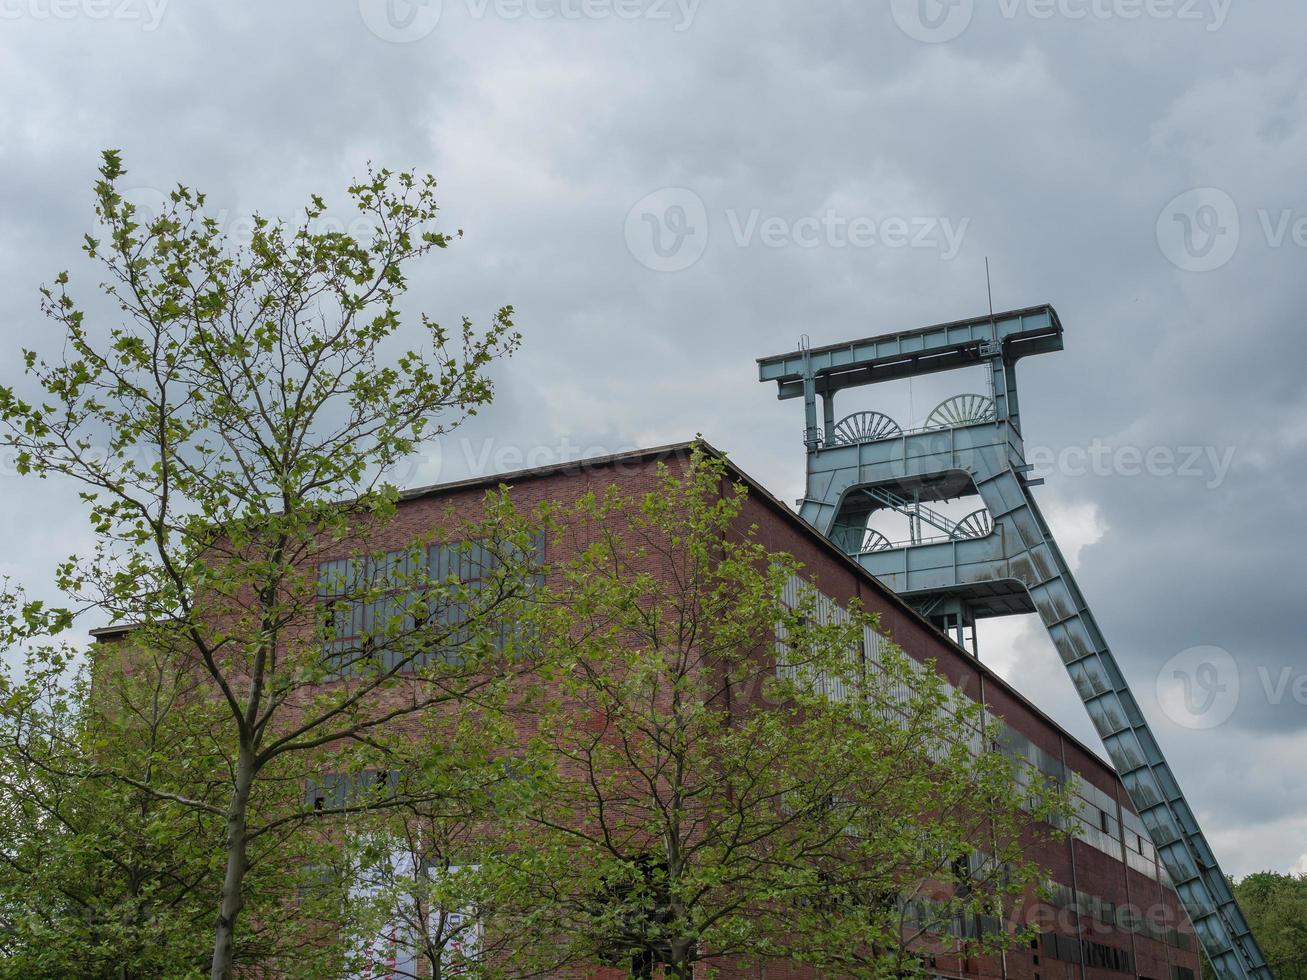 oude kolenmijn in het Duitse Ruhrgebied foto